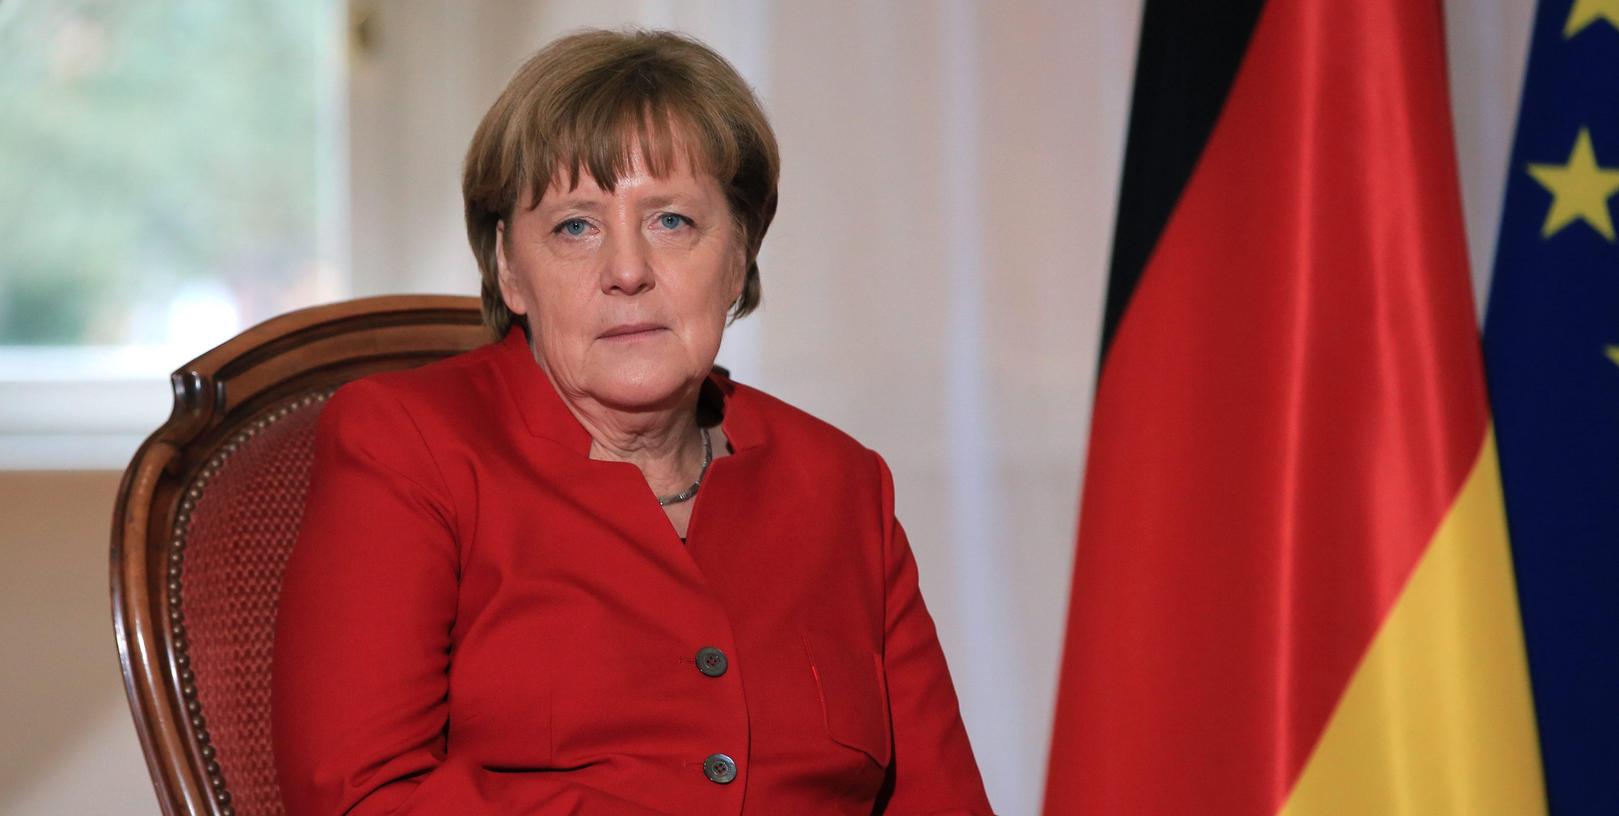 Merkels Rückhalt in der Bevölkerung schwindet. Jeder Zweite lehnt eine vierte Amtsperiode der Kanzlerin ab.